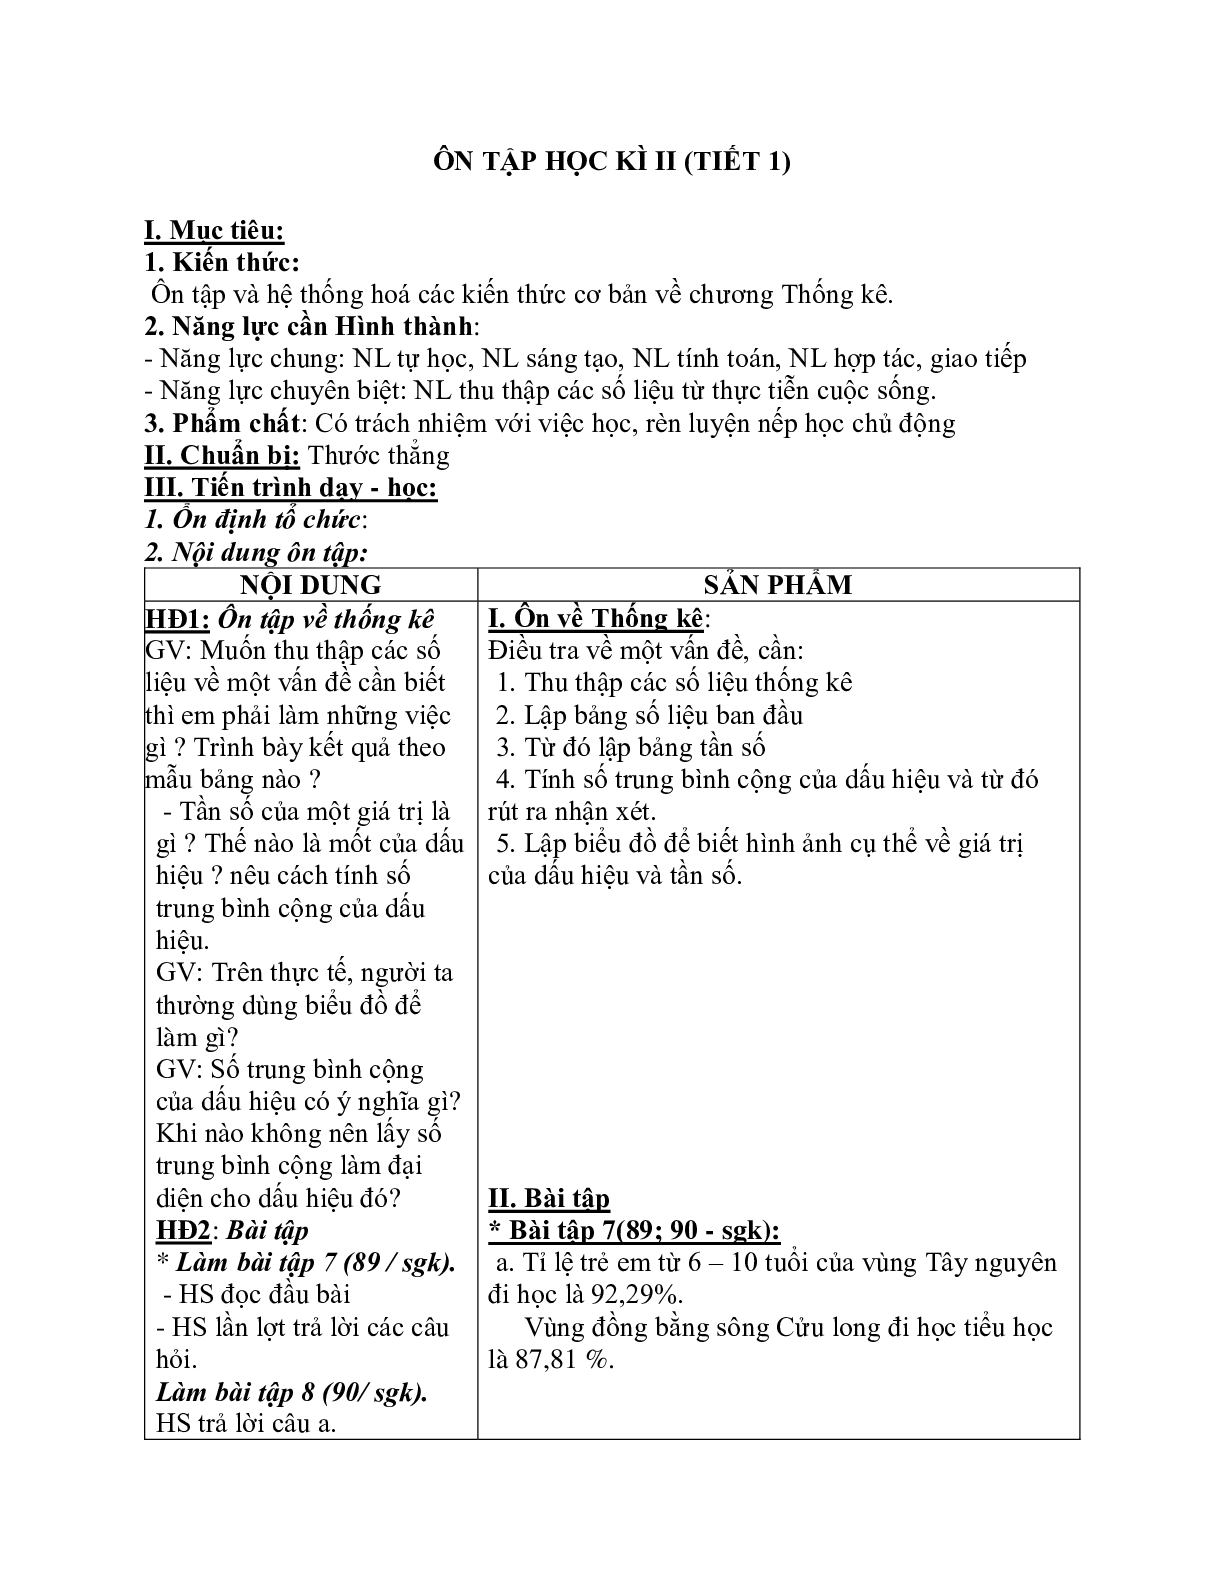 Giáo án Toán học 7: Ôn tập học kì 2 (tiết 1) chuẩn nhất (trang 1)